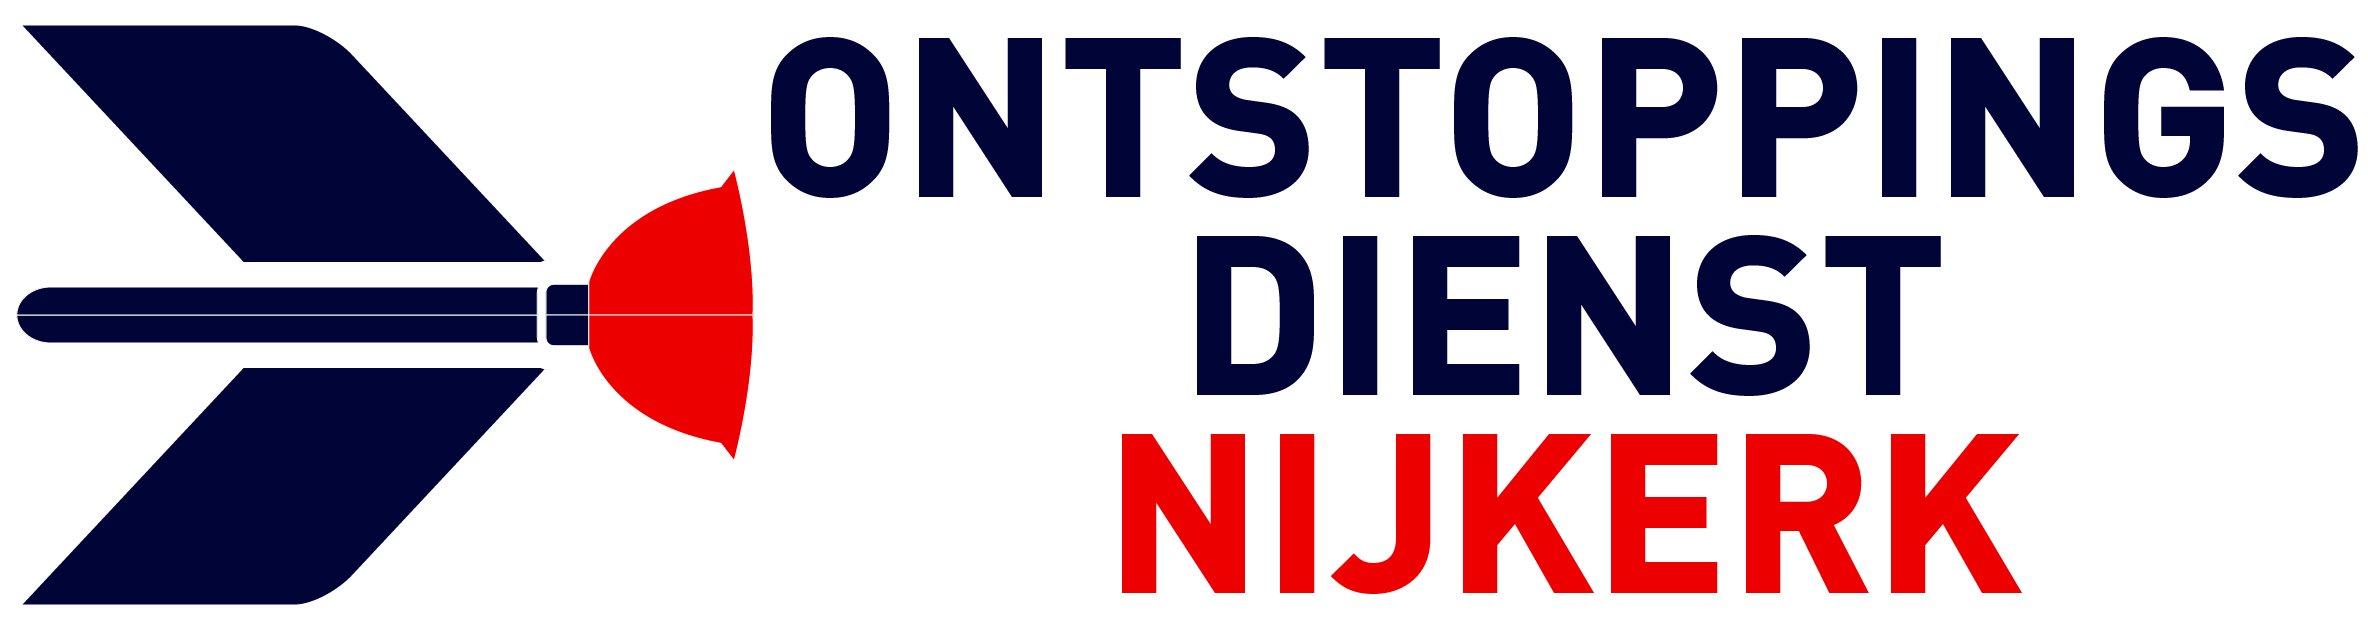 Ontstoppingsdienst Nijkerk logo